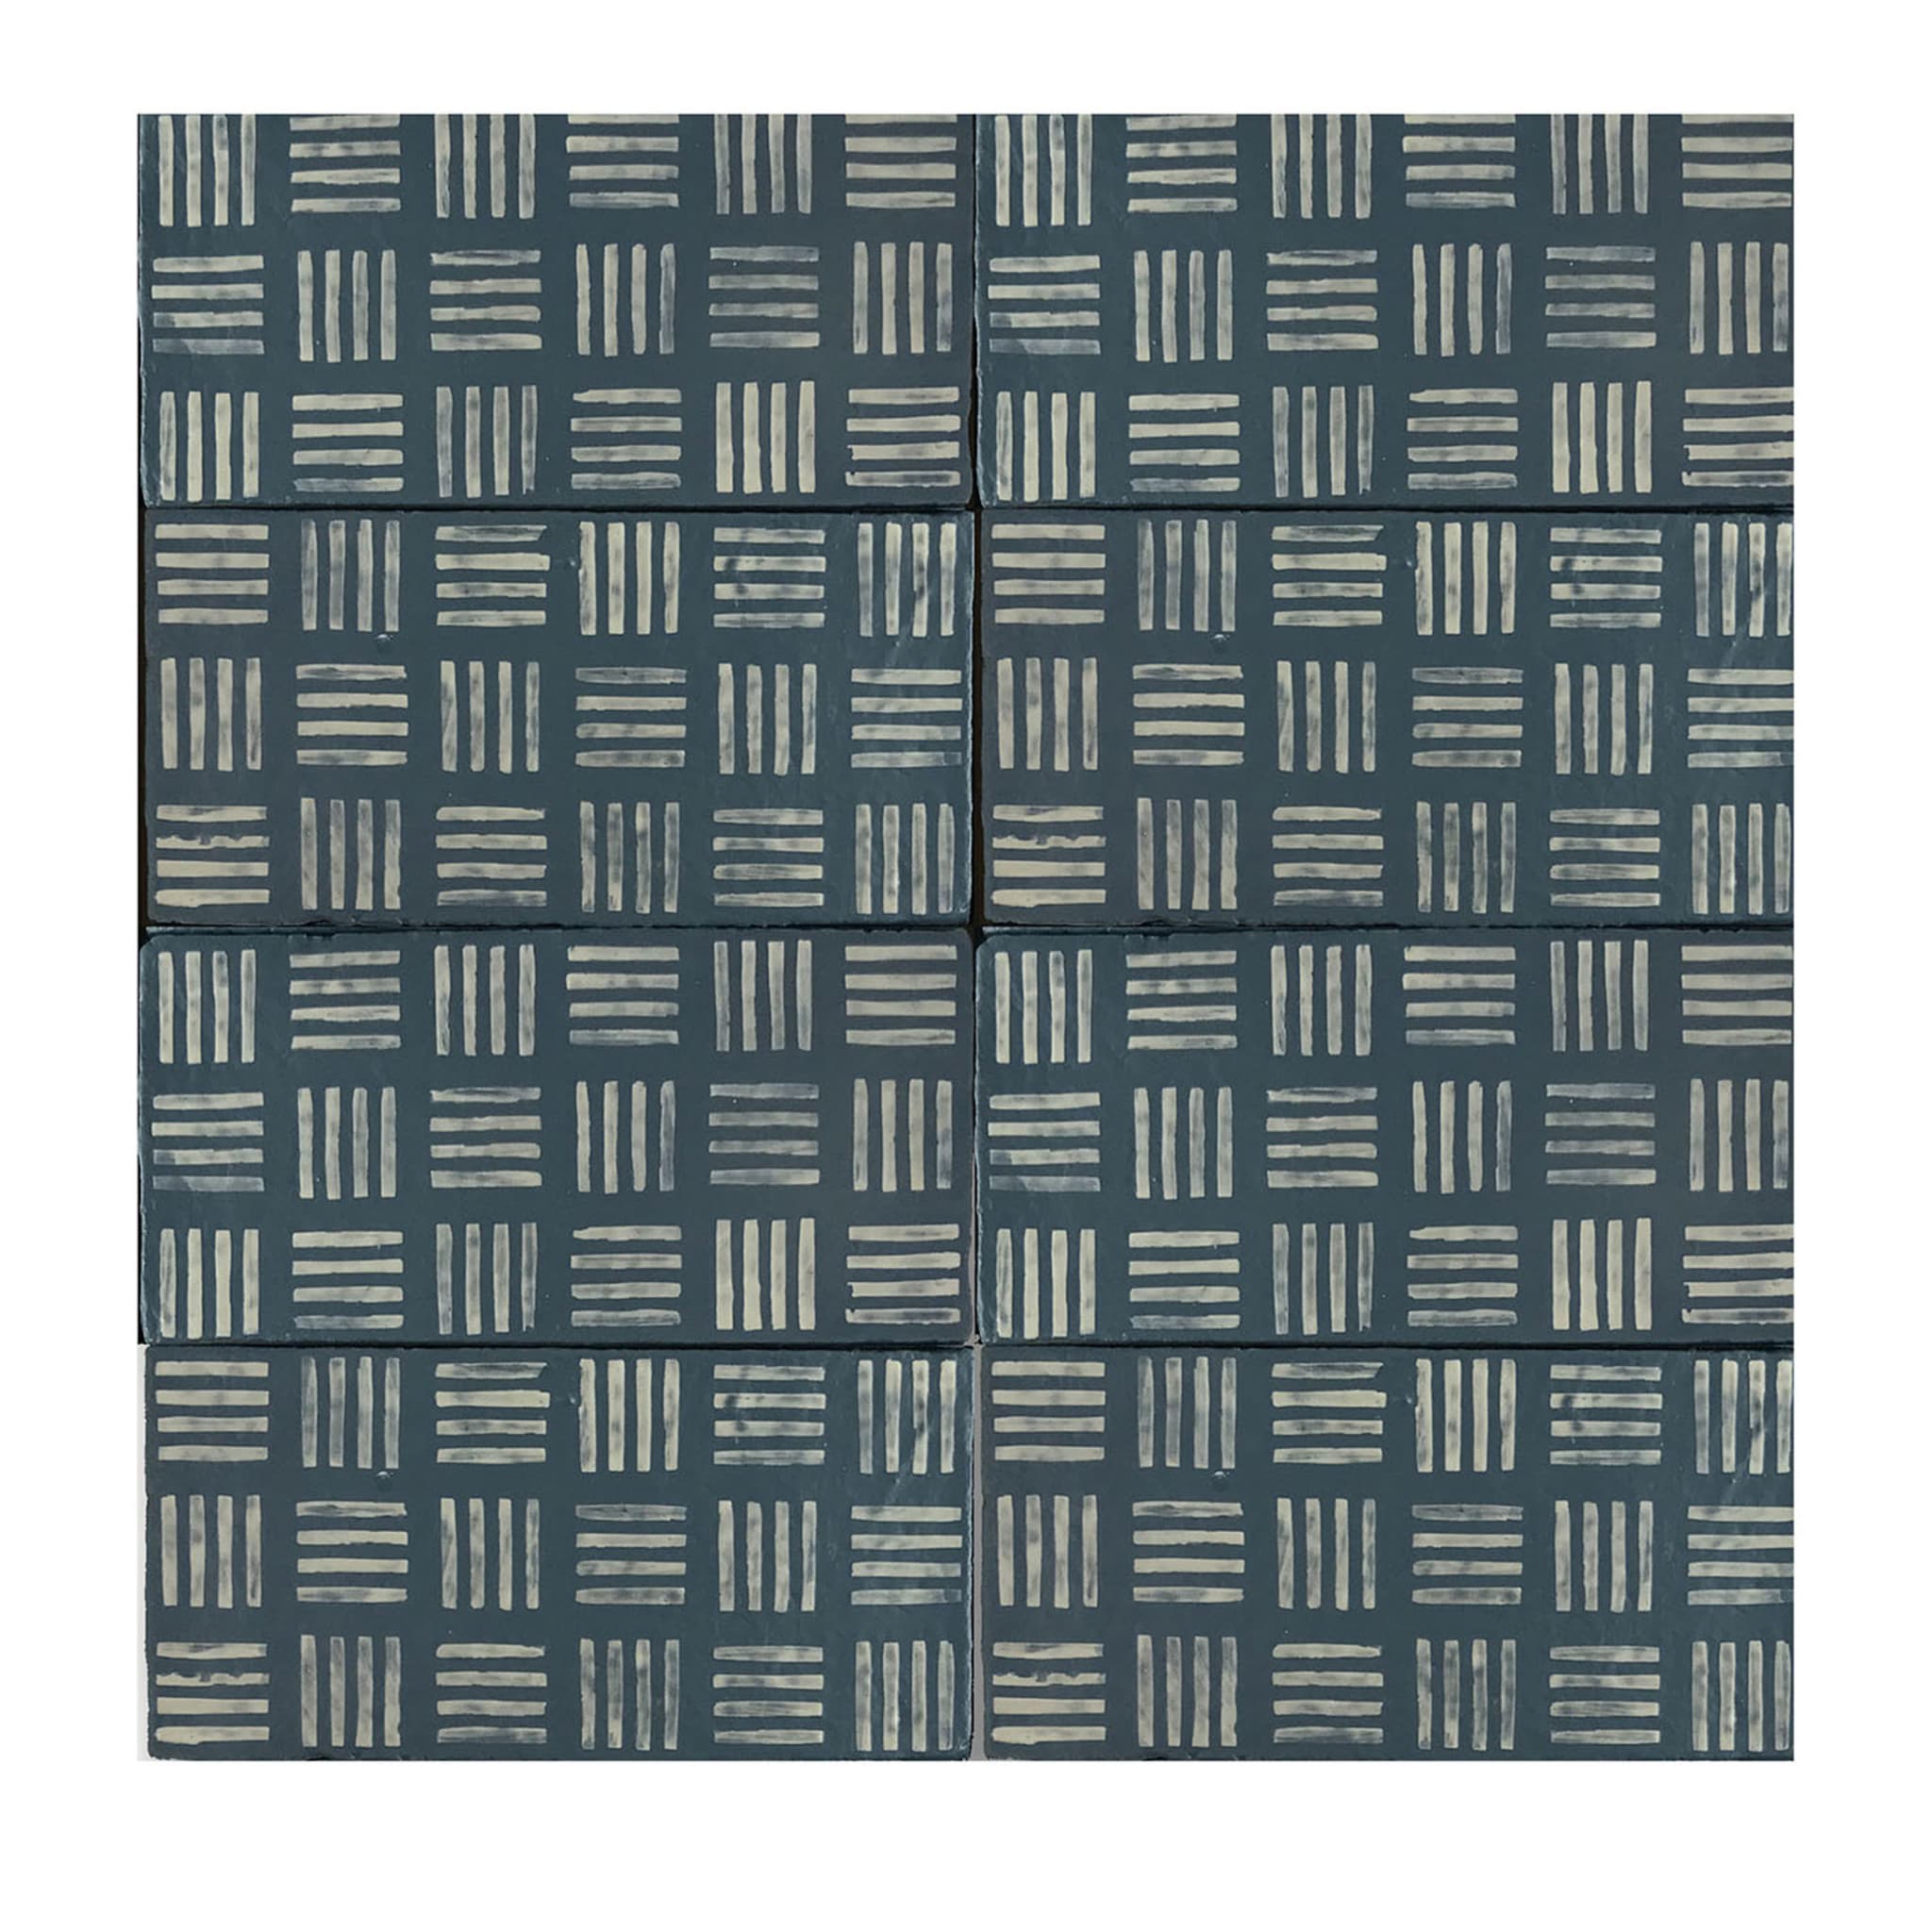 Daamè Set of 50 Rectangular Blue Tiles #2 - Main view